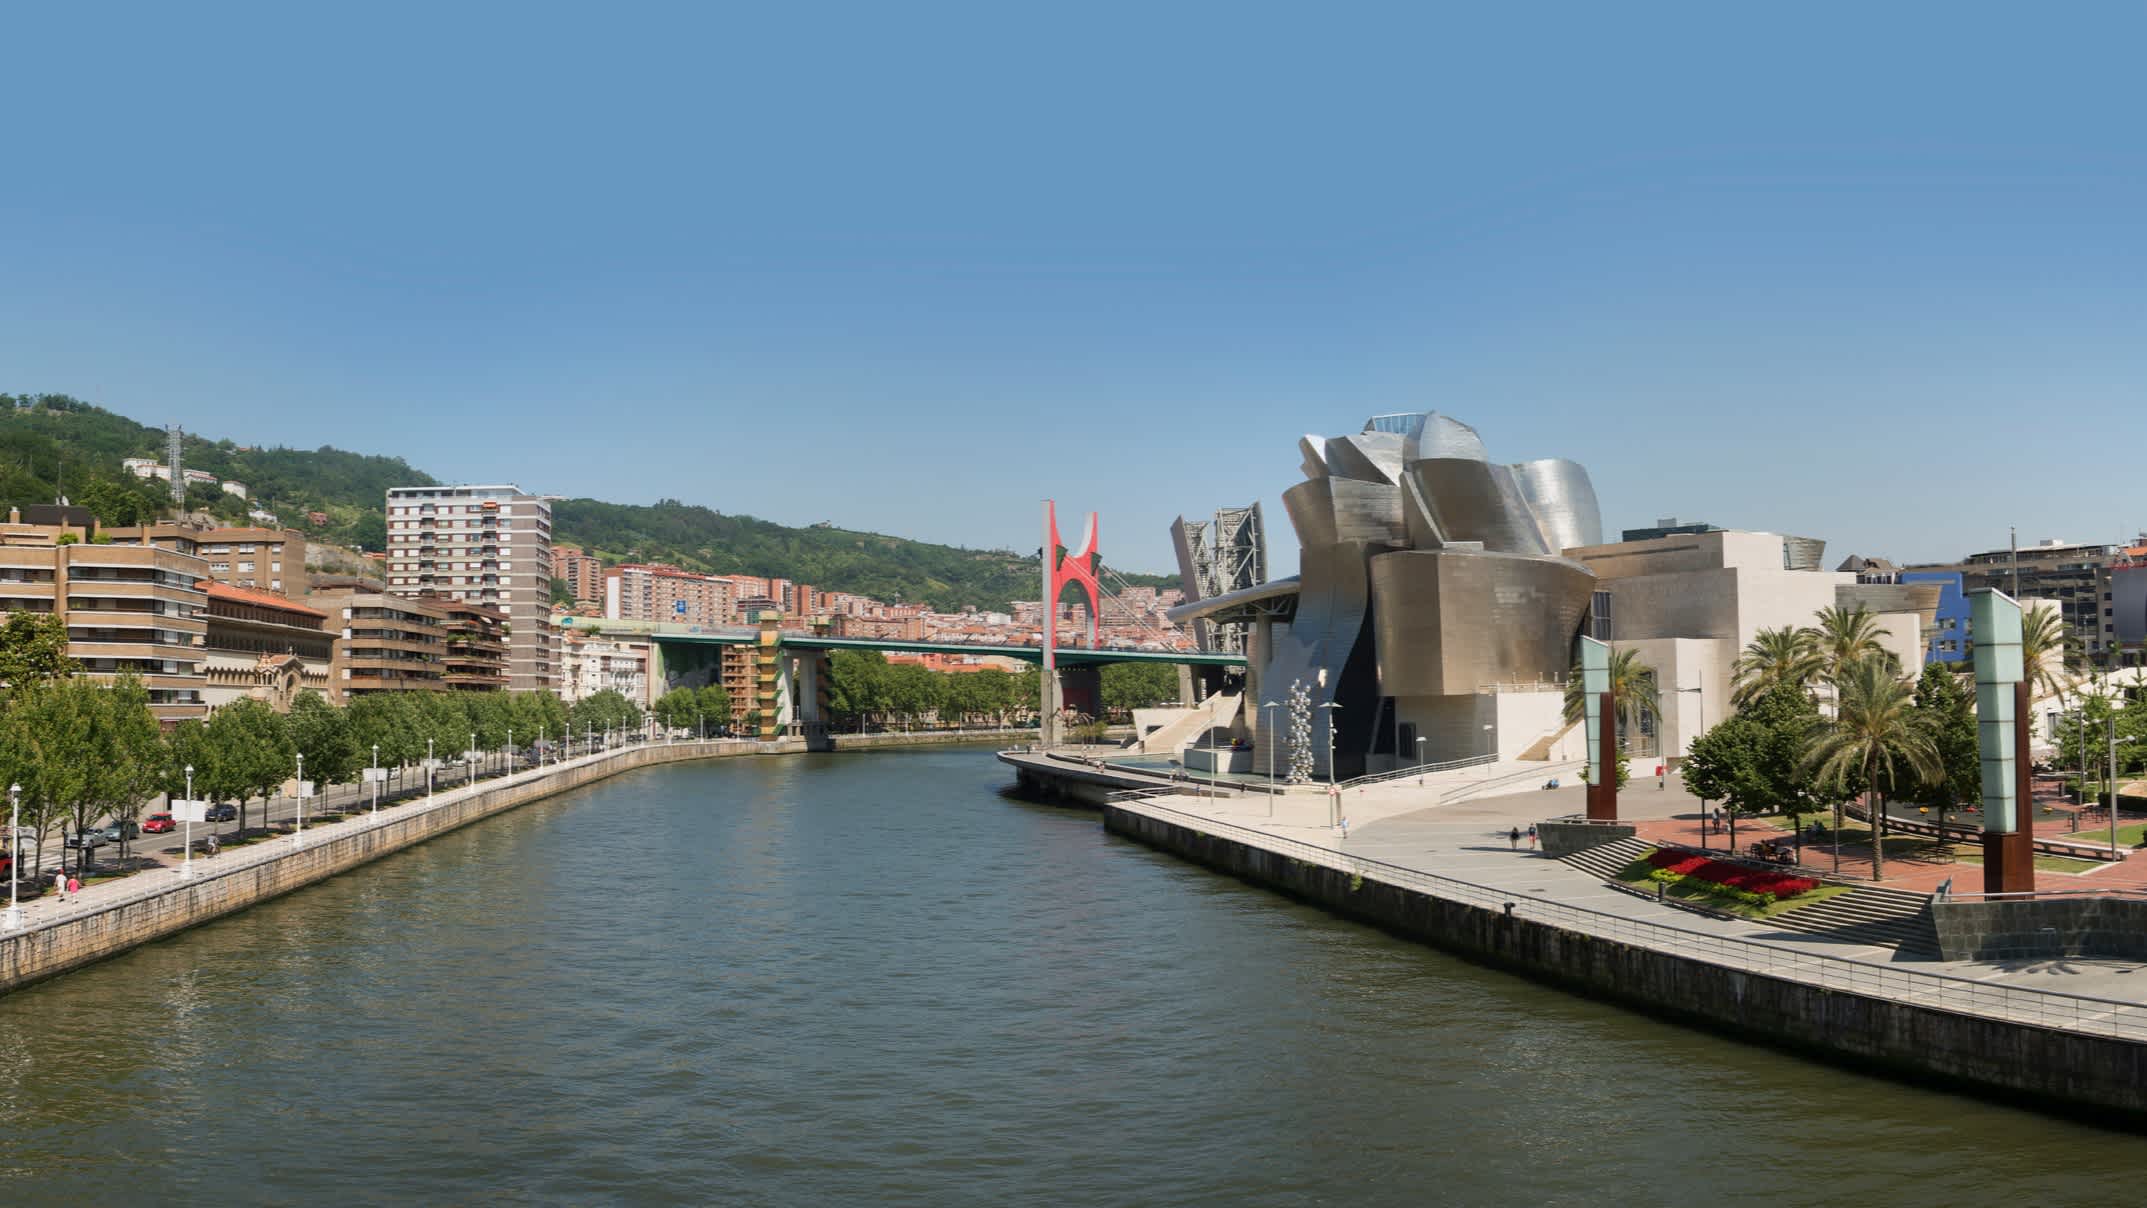 Panoramablick auf Bilbao mit dem Guggenheim-Museum auf der rechten Seite, Spanien.
